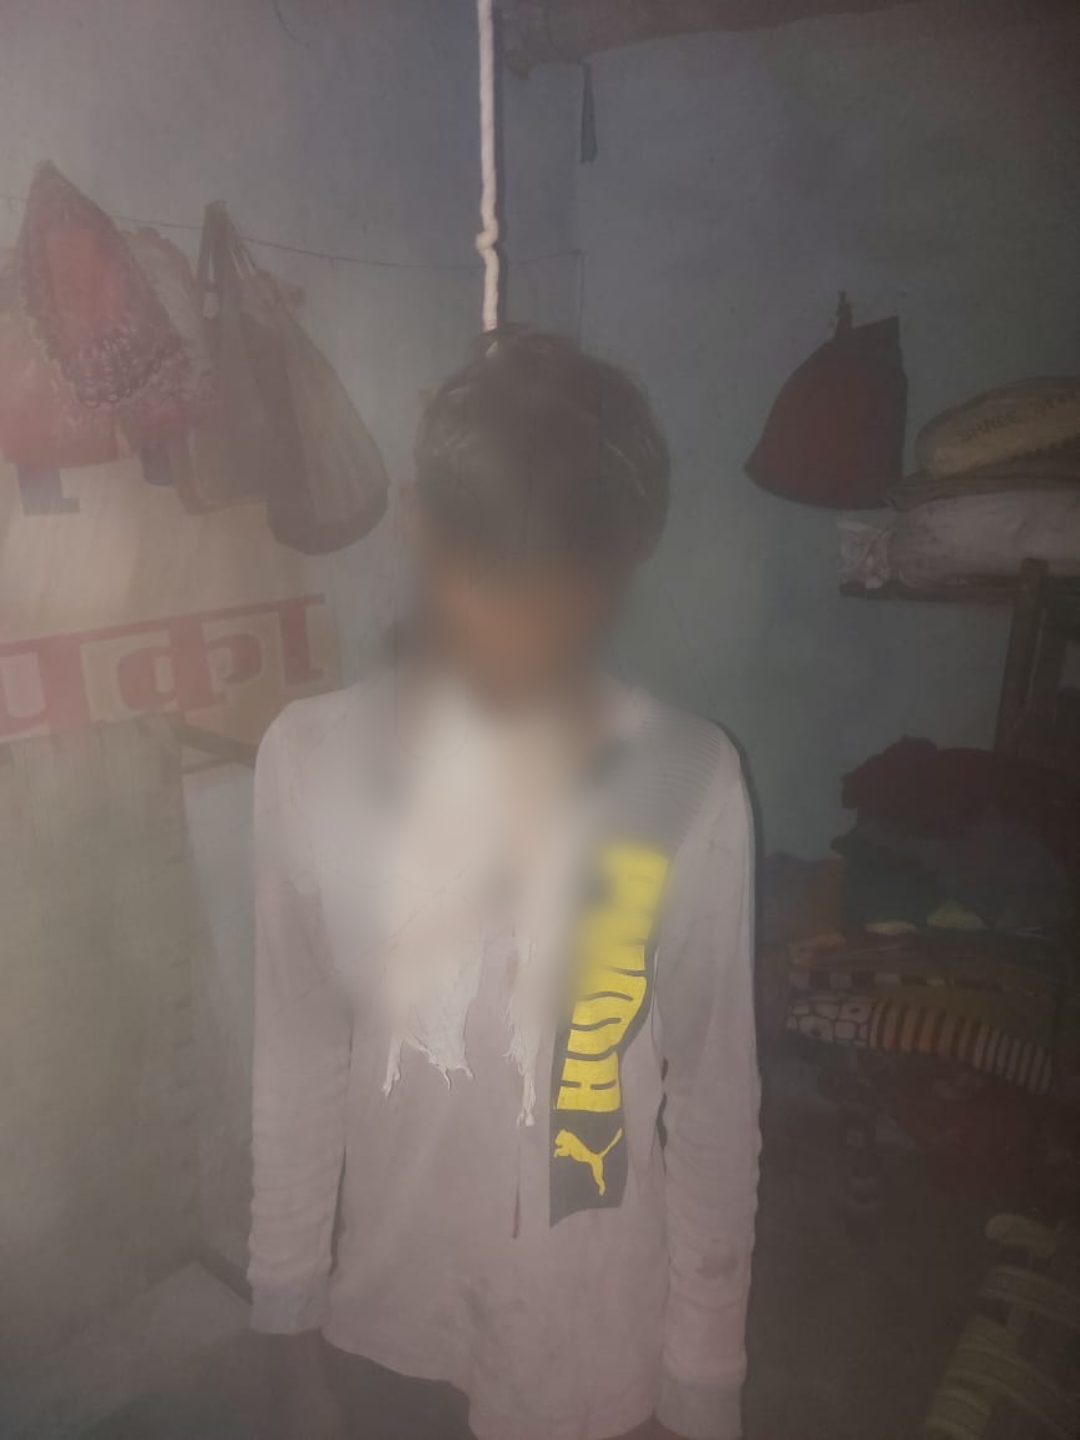 RAIPUR BREAKING : 19 वर्षीय युवक ने की खुदकुशी, फंदे पर लटकती मिली लाश, पेट दर्द से था परेशान